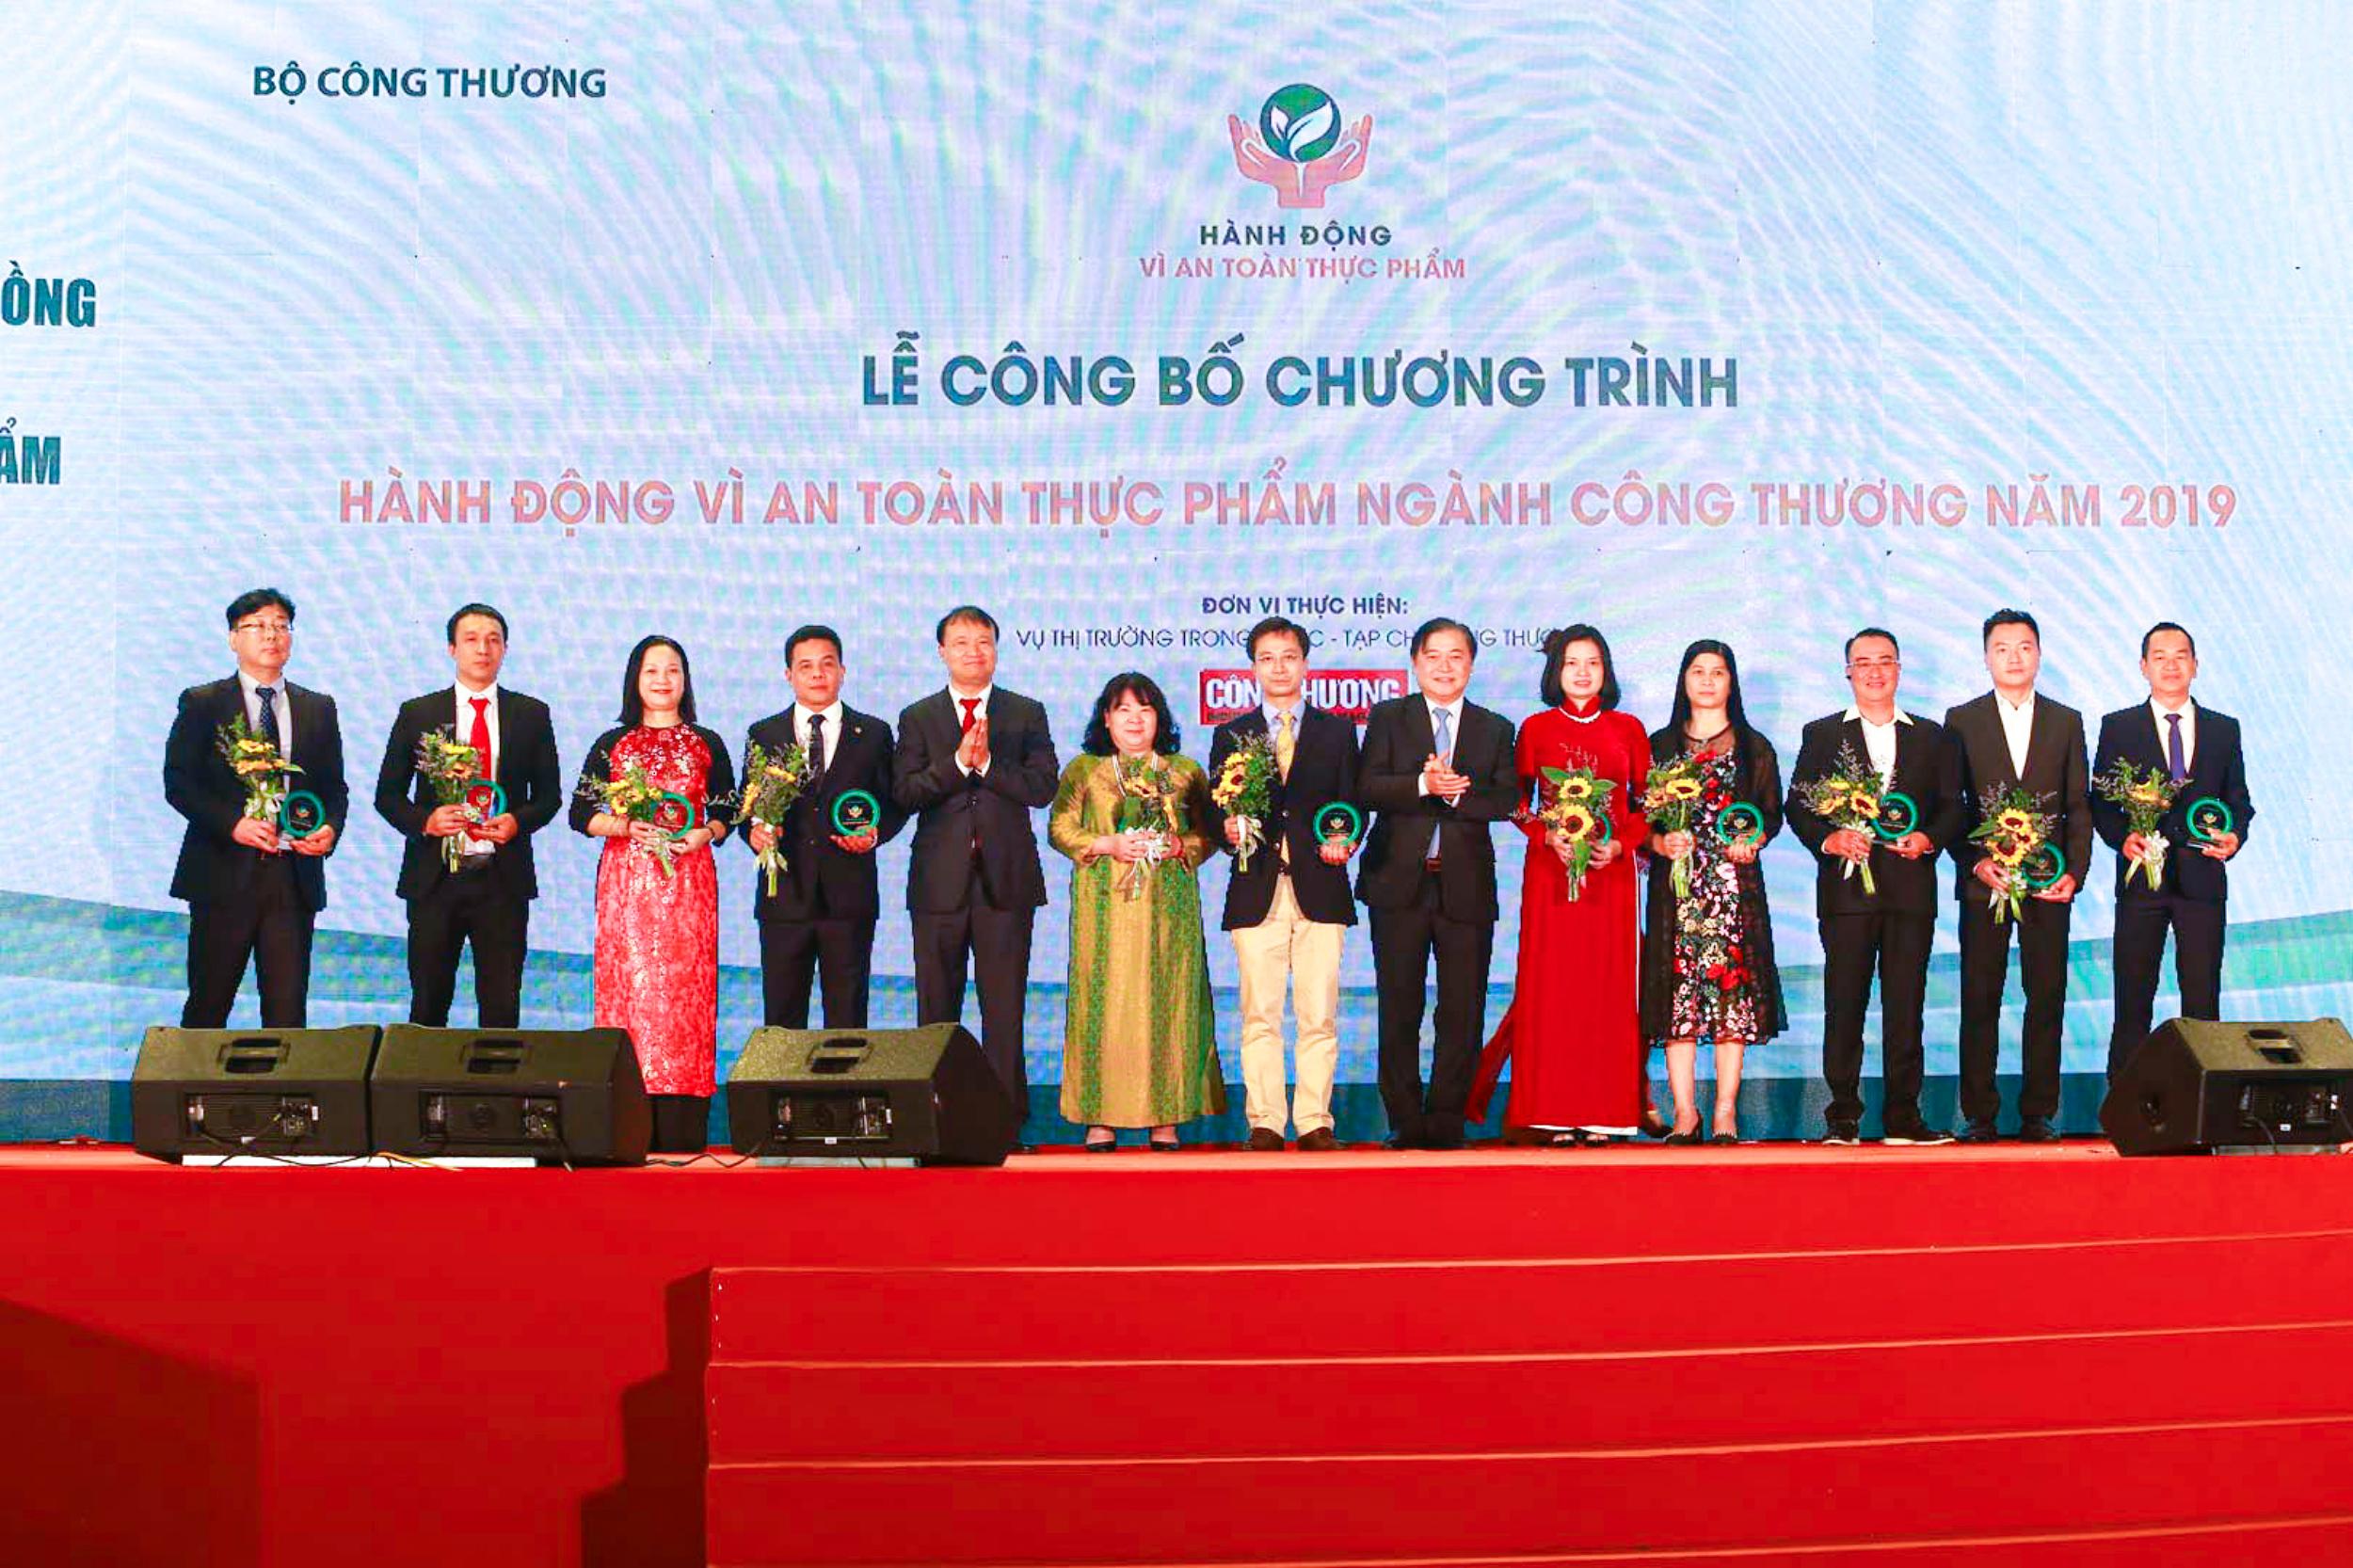 Đại diện Saigon Co.op nhận kỷ niệm chương Hành động vì an toàn thực phẩm